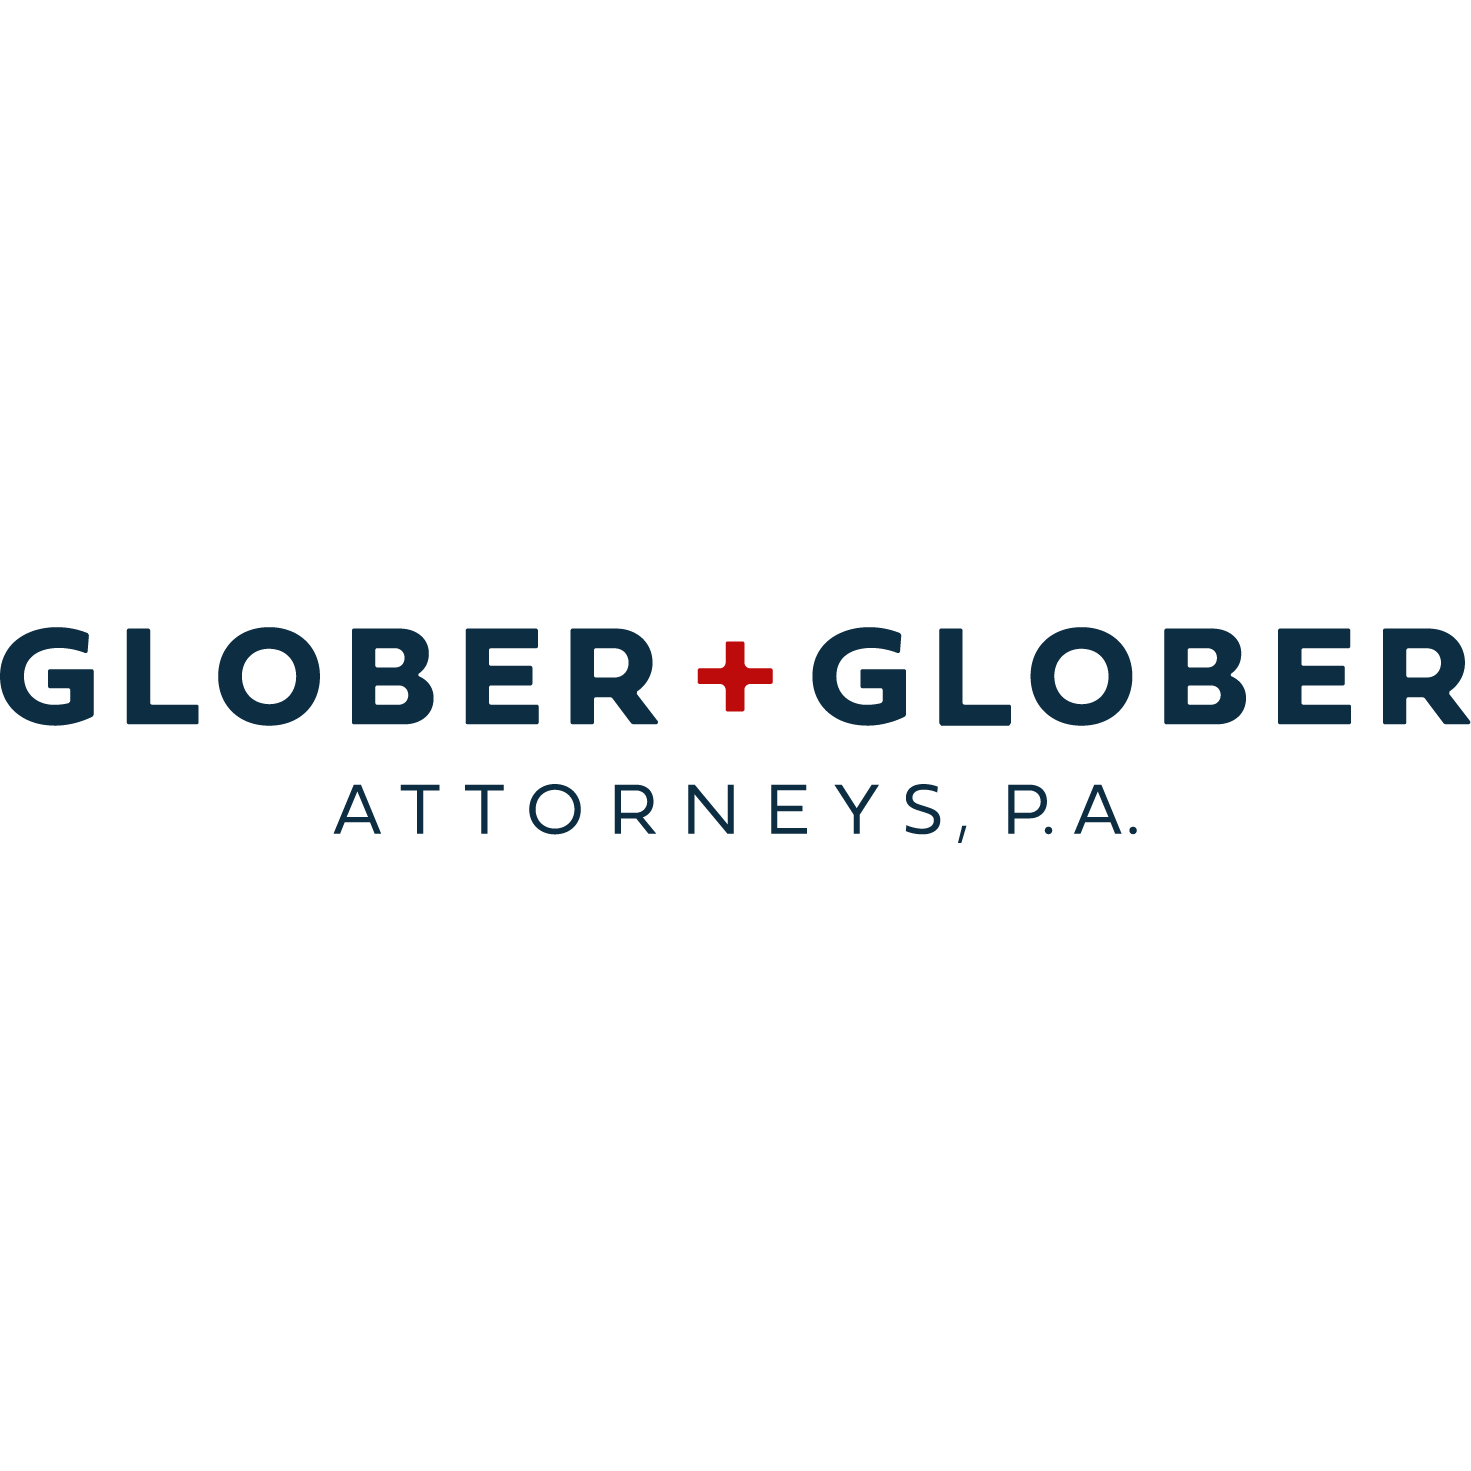 Glober + Glober, Attorneys, P.A - Jacksonville Beach, FL 32250 - (904)587-4446 | ShowMeLocal.com